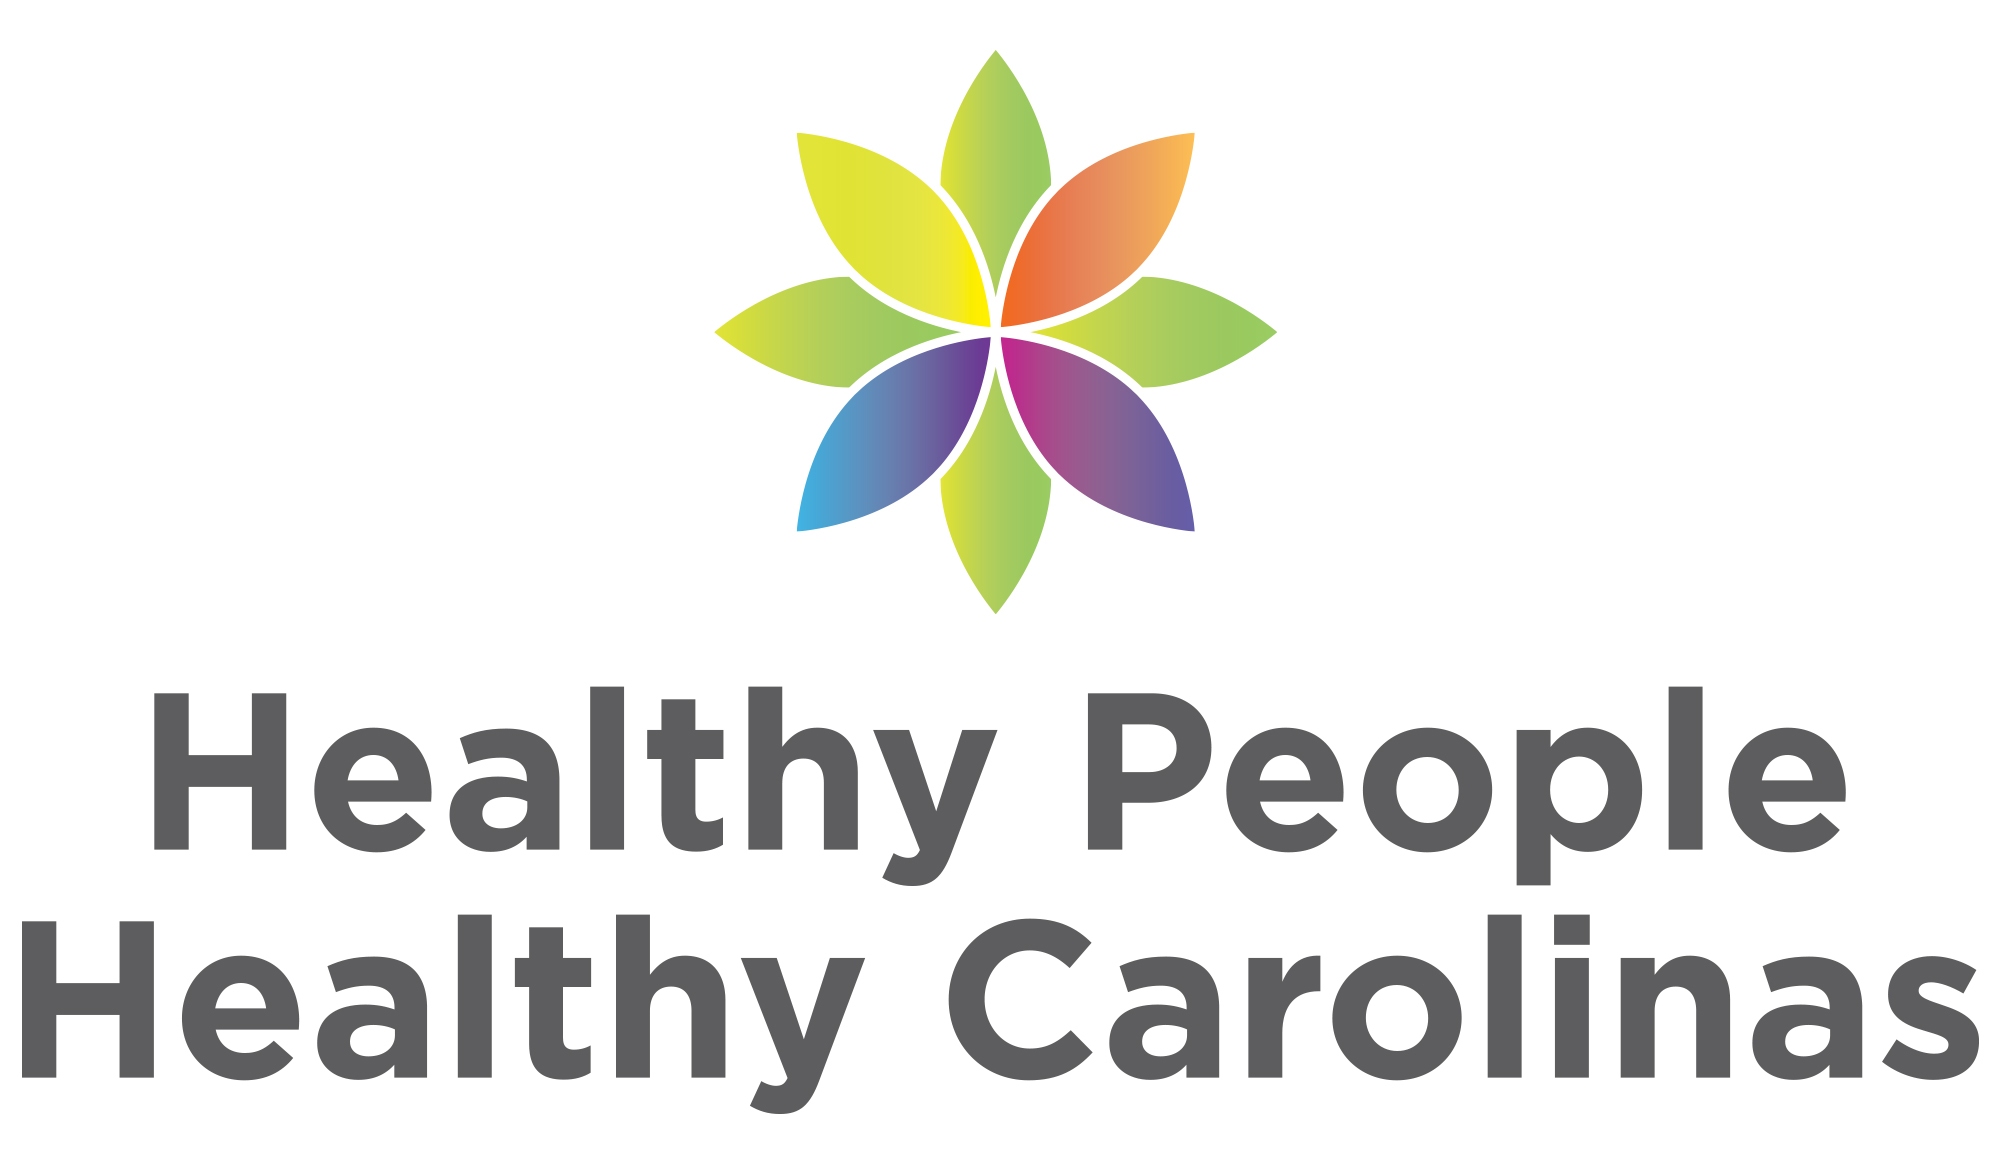 Healthy People, Healthy Carolinas